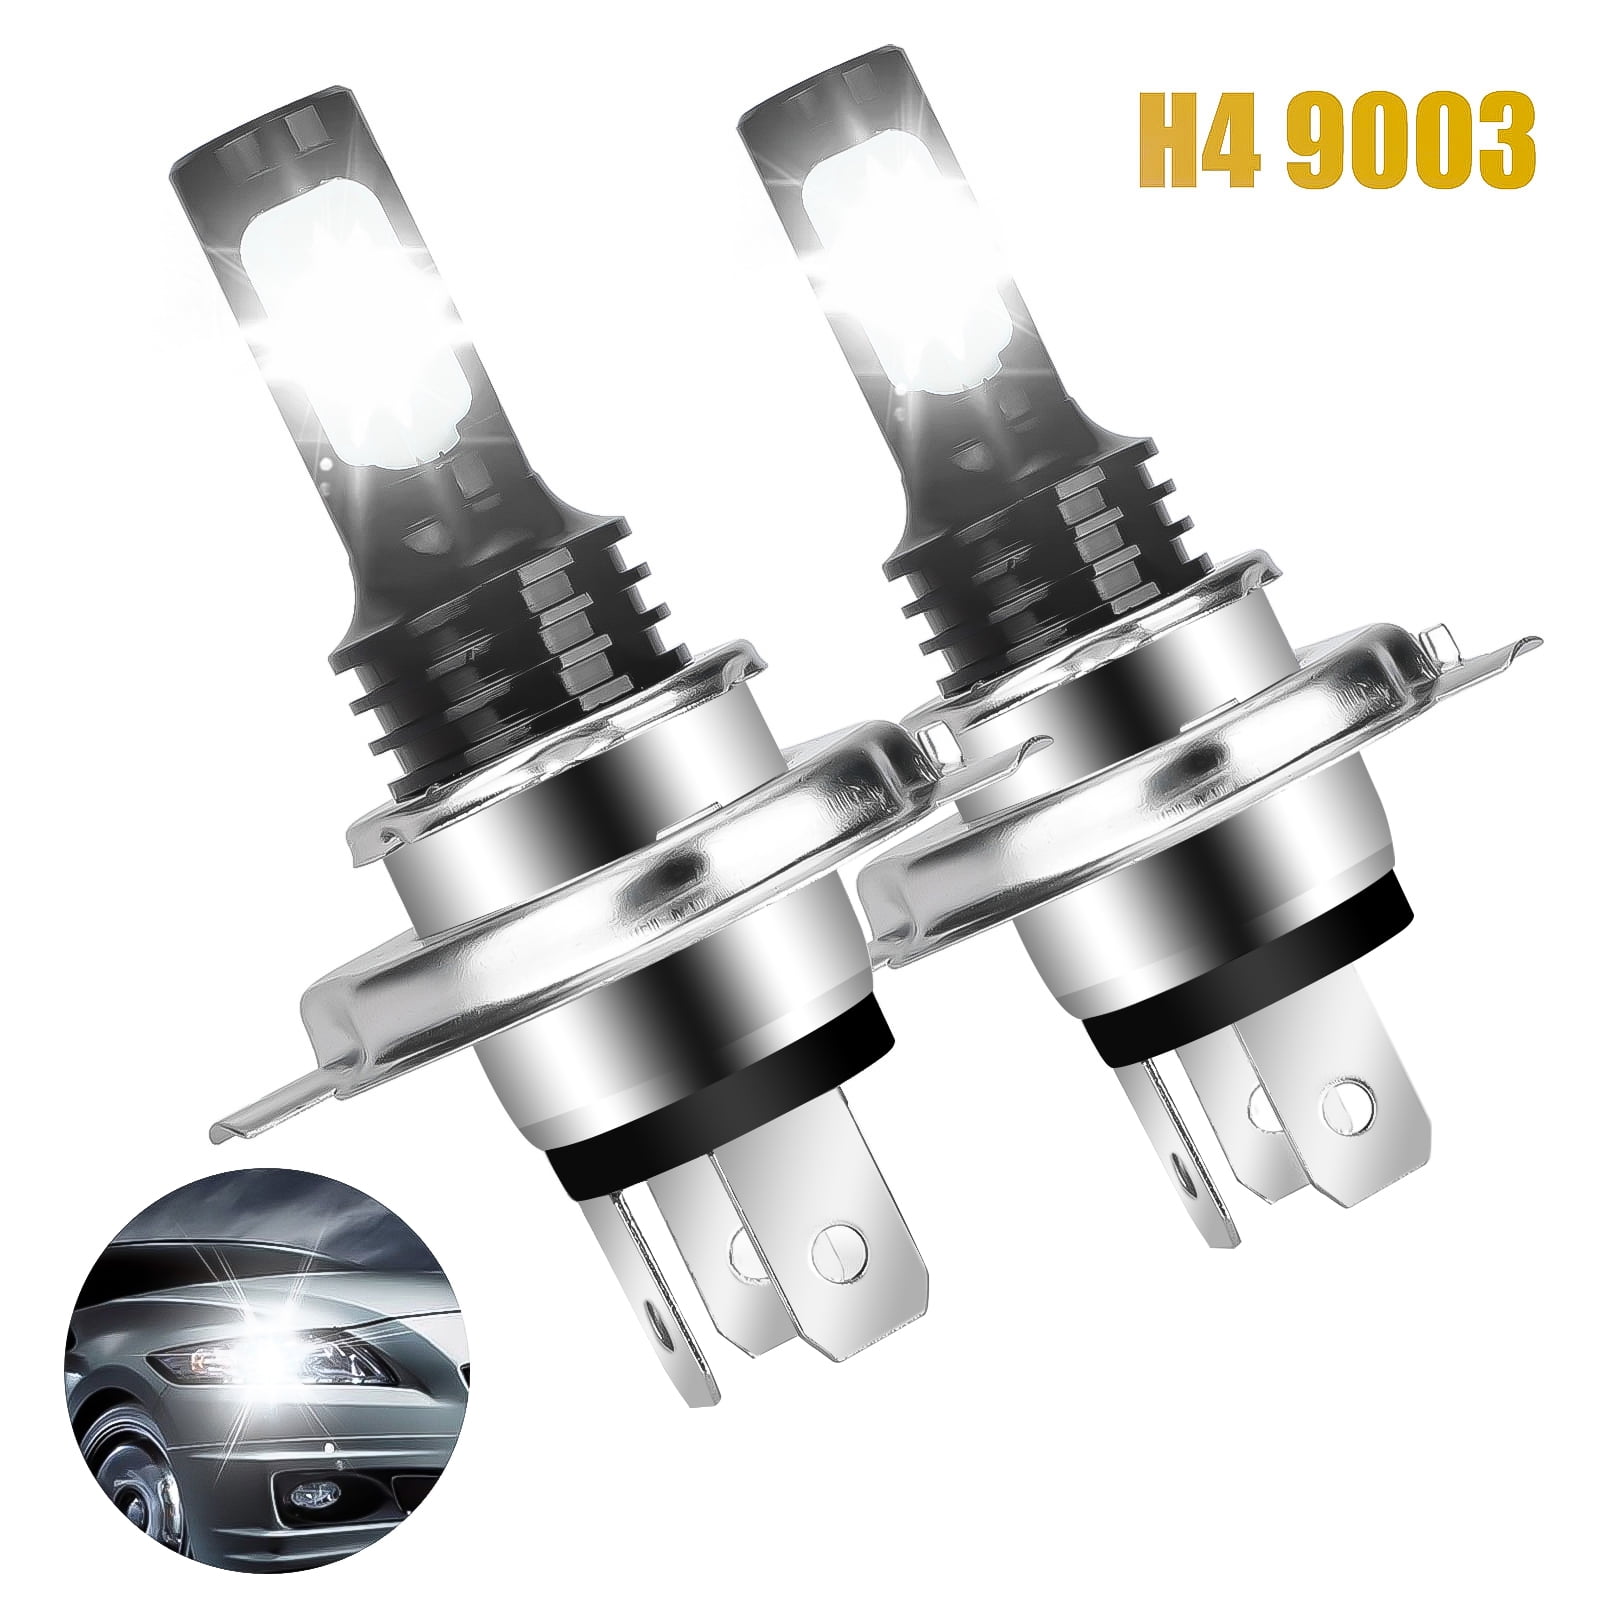 2Pcs H4 9003 200W 20000LM 6000K Car COB LED Conversion Headlight Bulb Hi/Lo Beam 